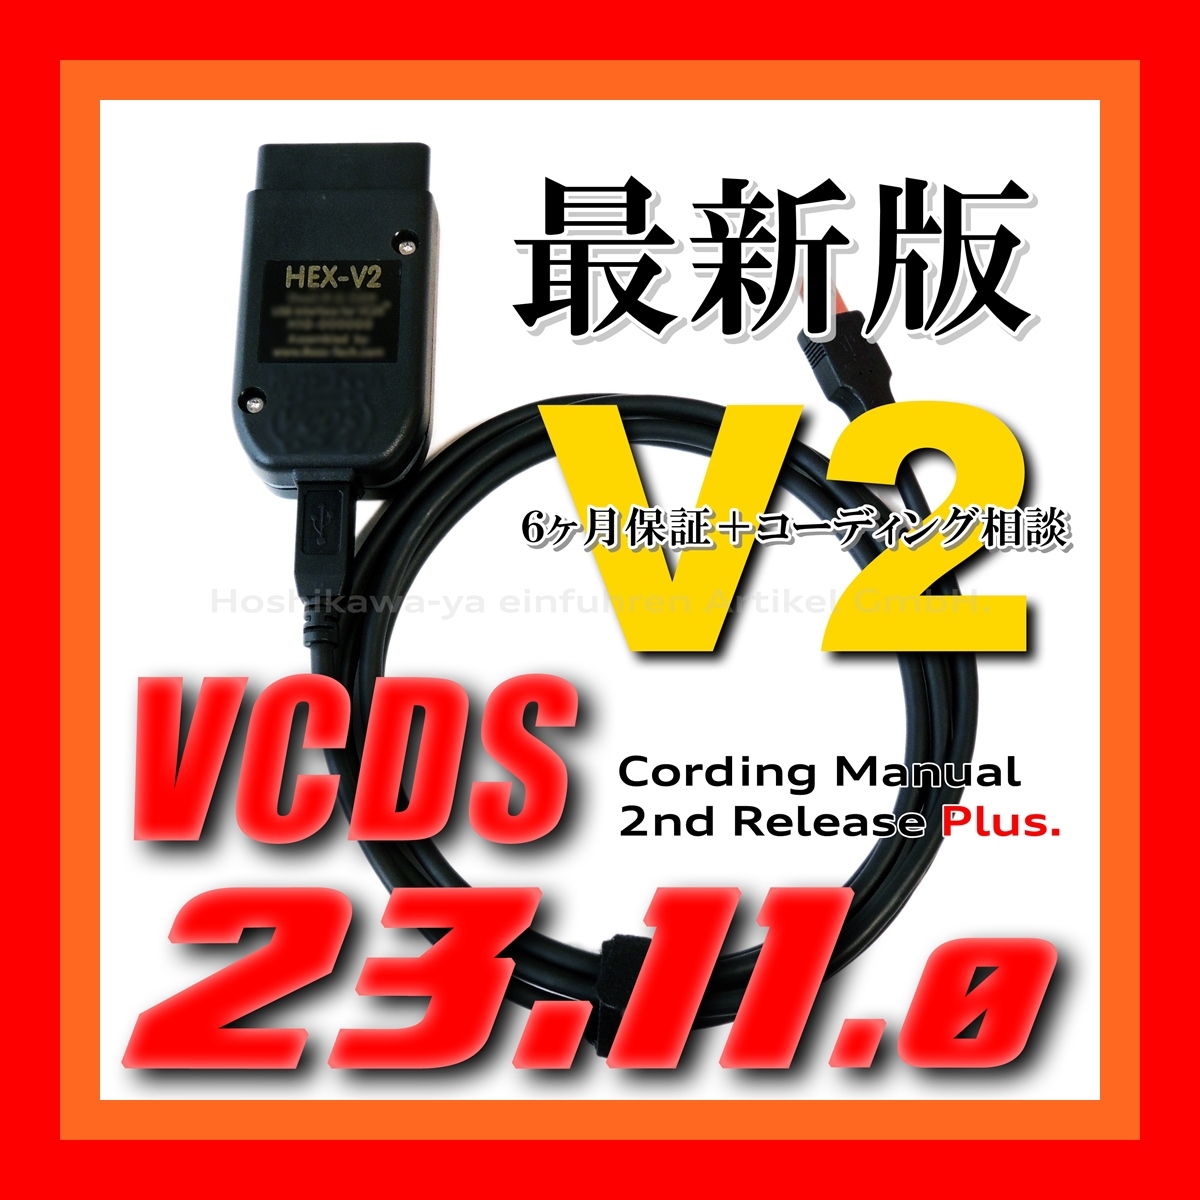 ◆ 【最新版23.11.0・保証付・送料無料】 VCDS 互換ケーブル HEX-V2タイプ 新コーディングマニュアル付 VW ゴルフ7.5 アウディ Audi A3 Q2_画像1